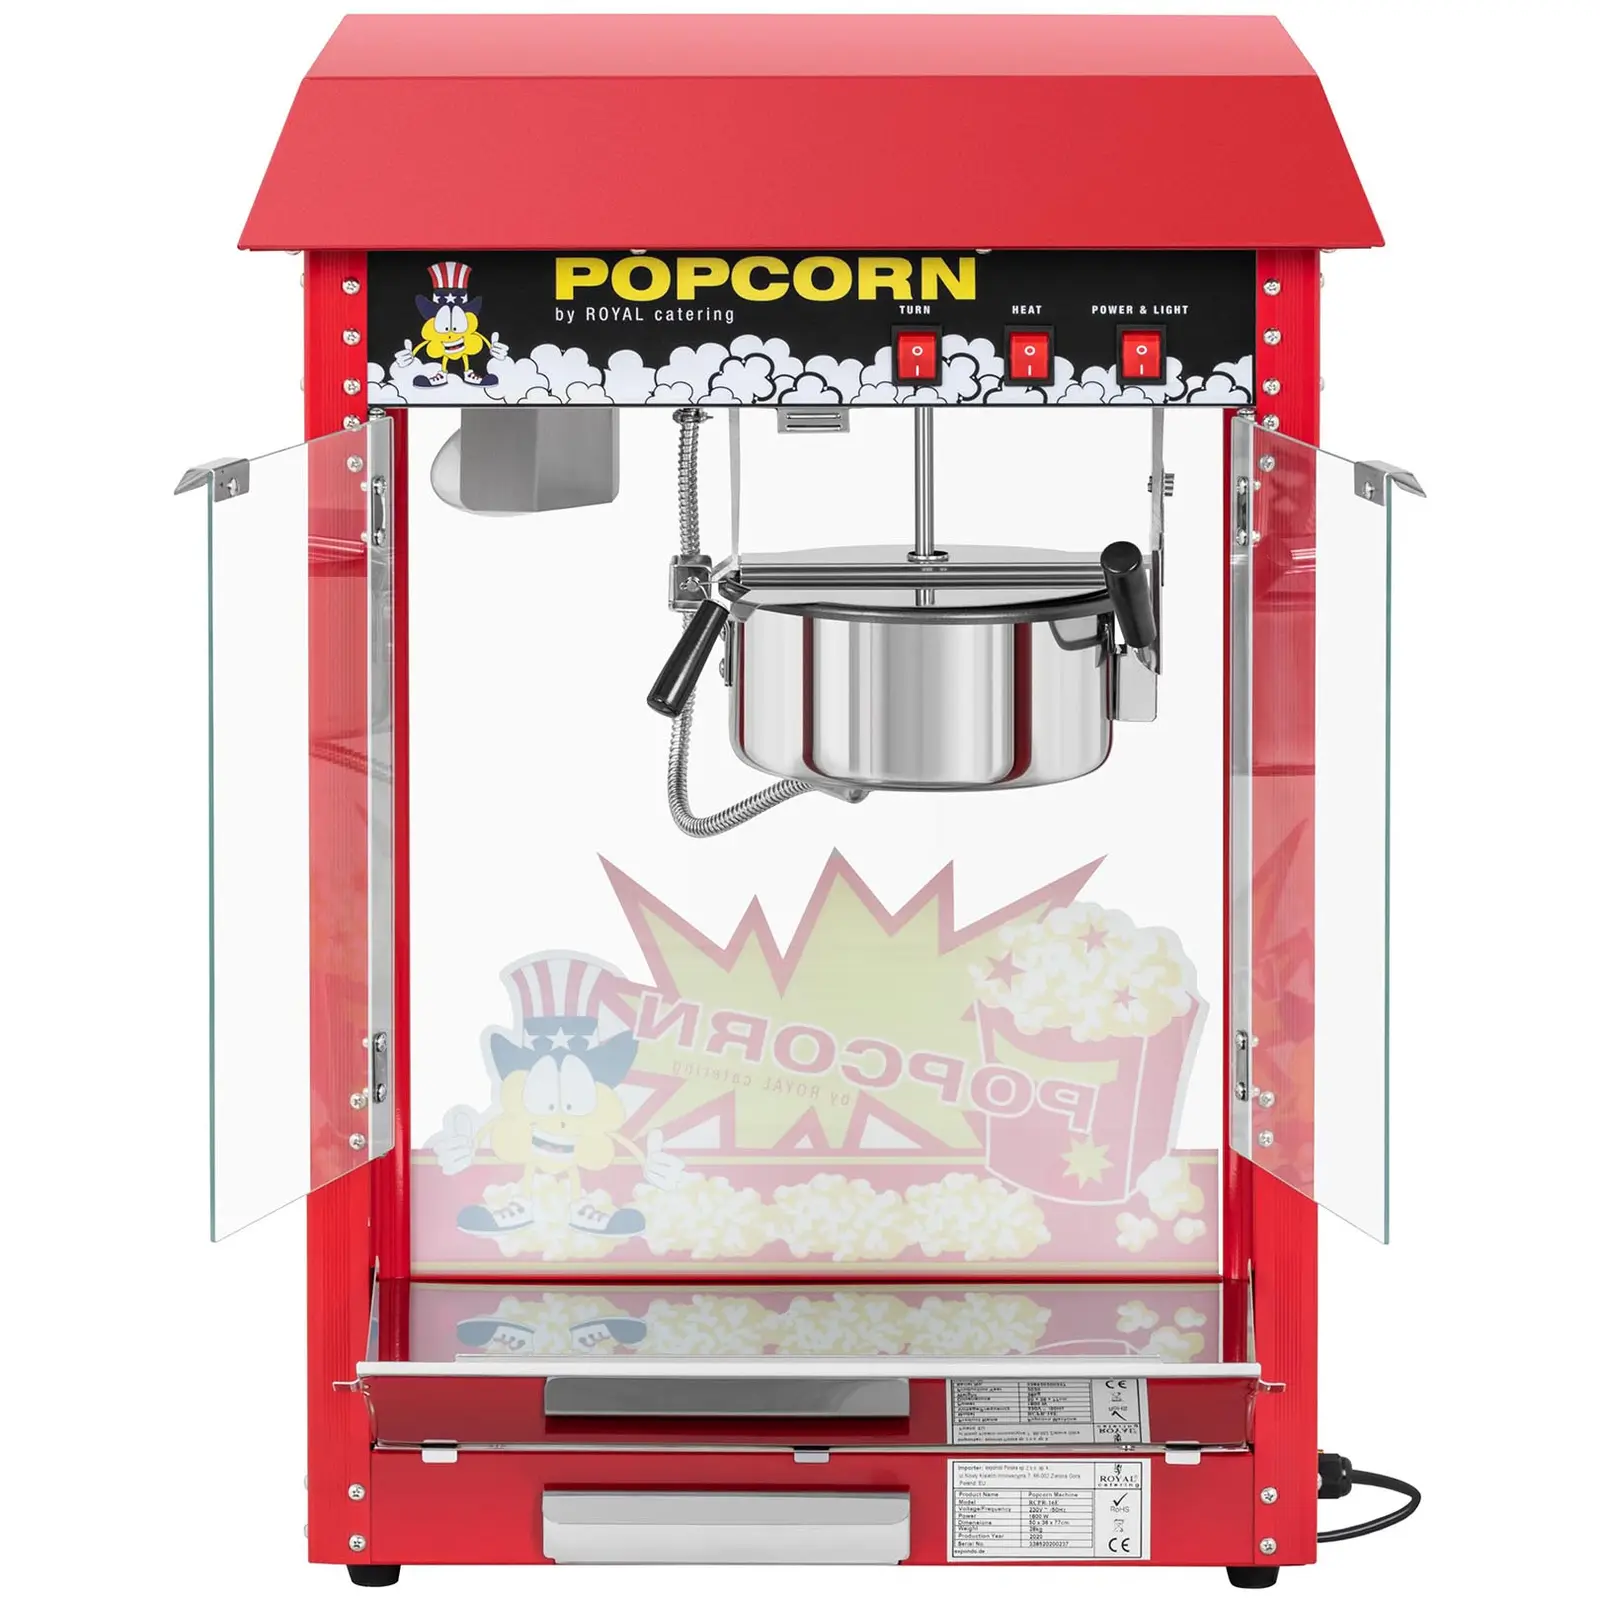 Pieni popcorn-kone - teho 1600 W - ruostumatonta terästä, karkaistua lasia ja teflonia